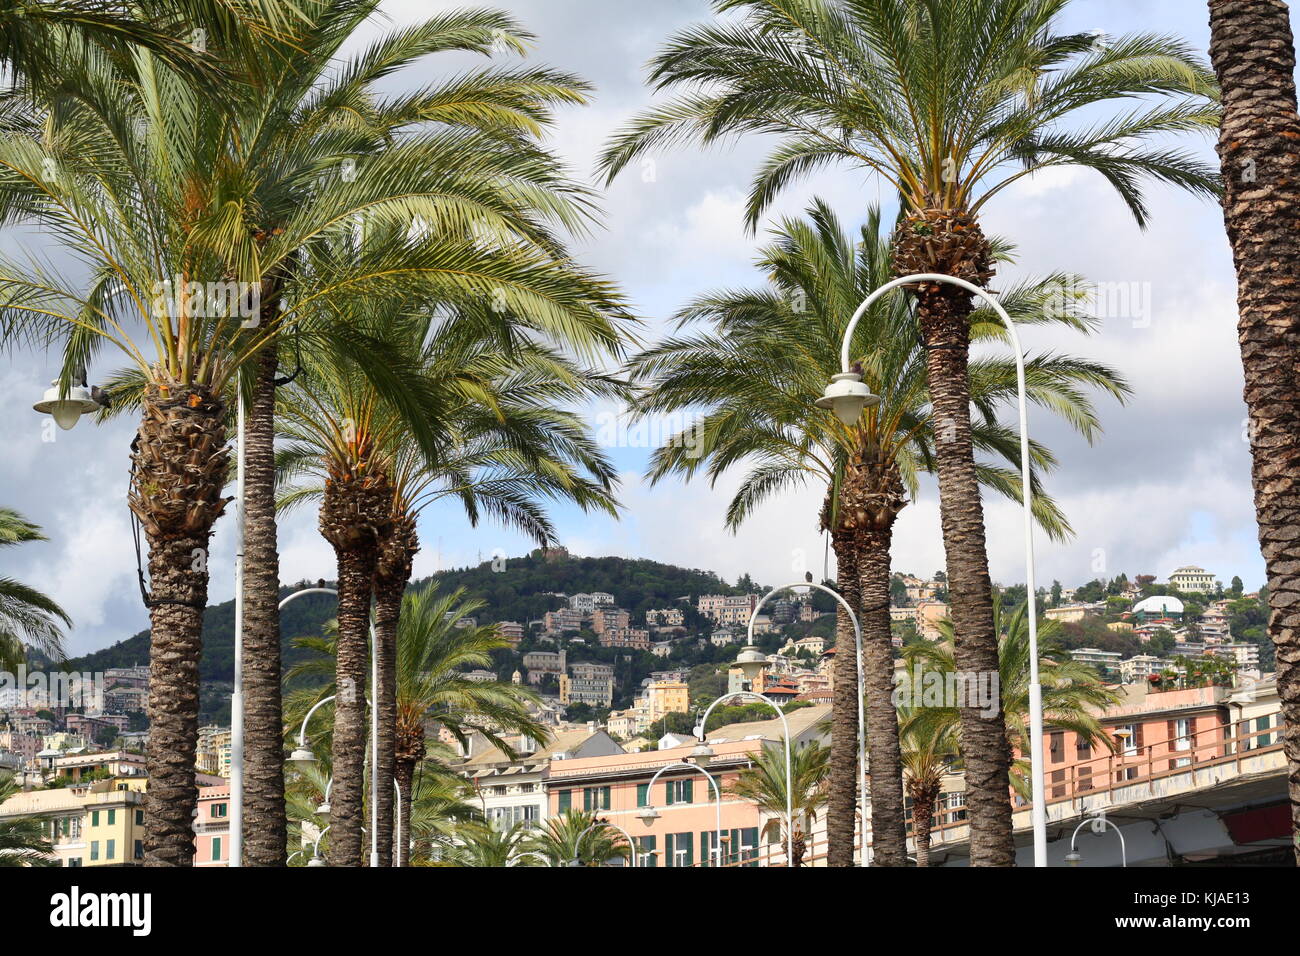 Palmen in Genua, der Hafen des Mittelmeers, mit subtropischem Klima. Stockfoto